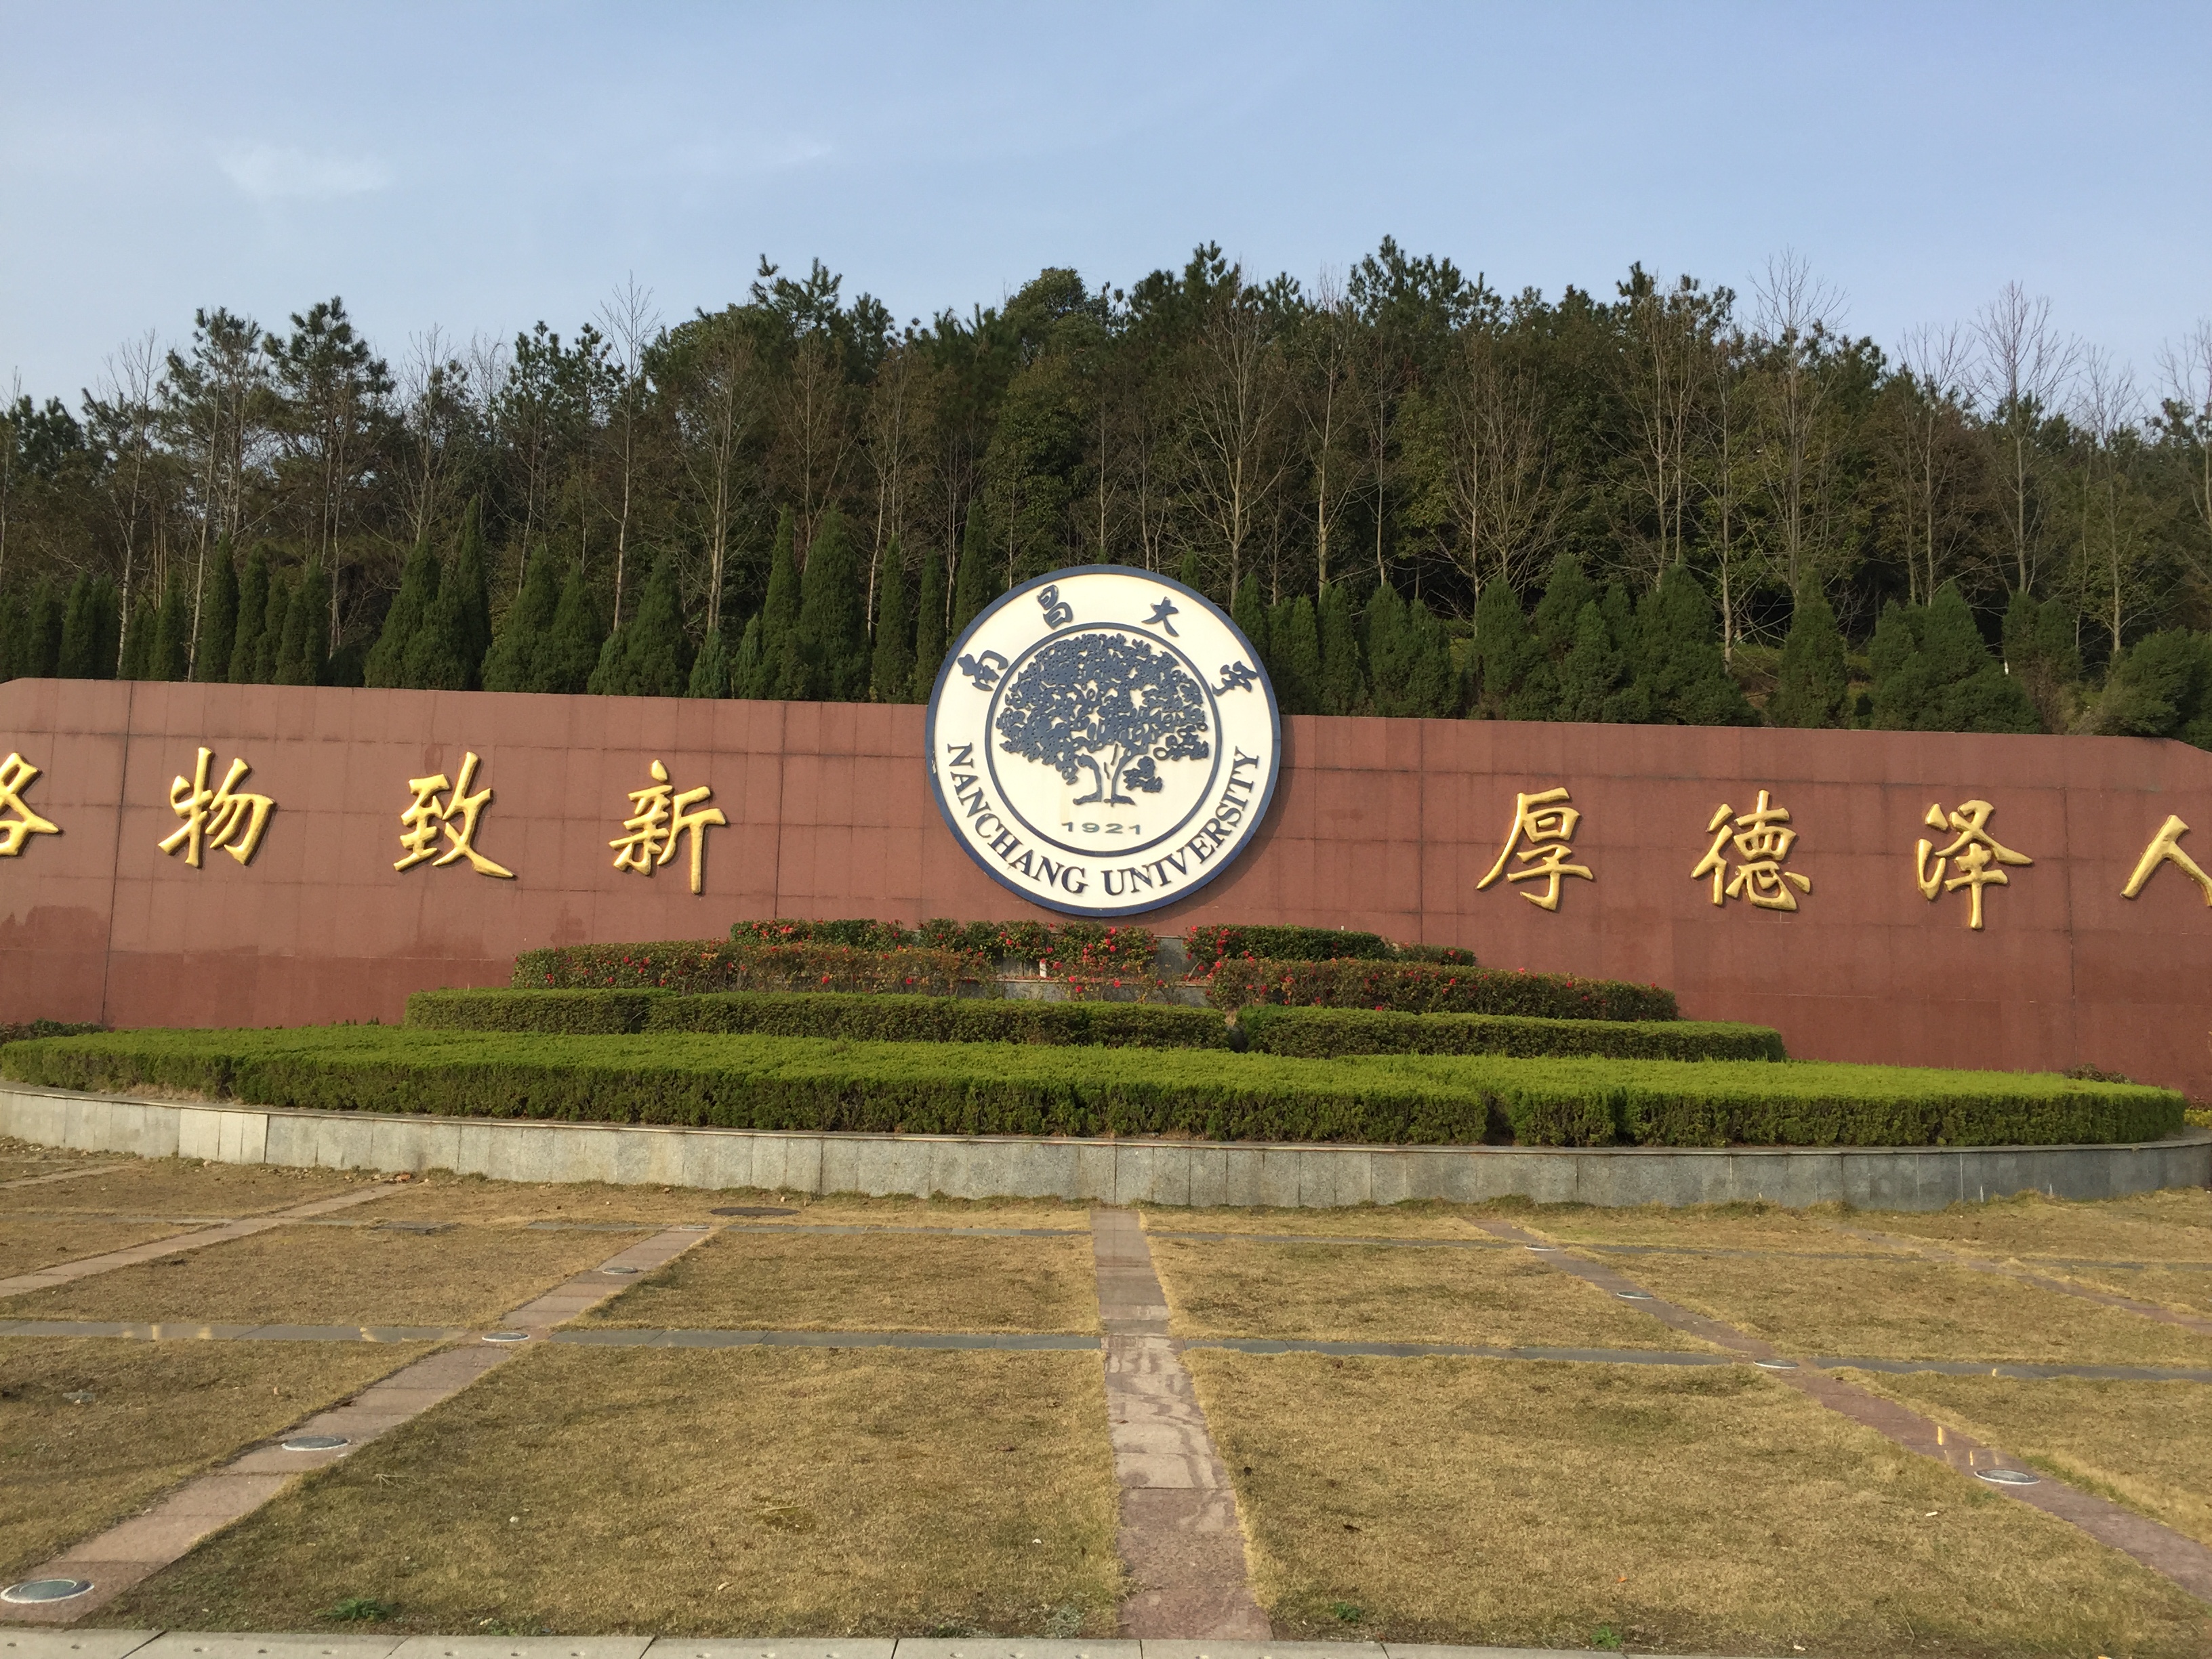 南昌大学的历史,起源于1921年创办的江西公立医学专门学校和1940年